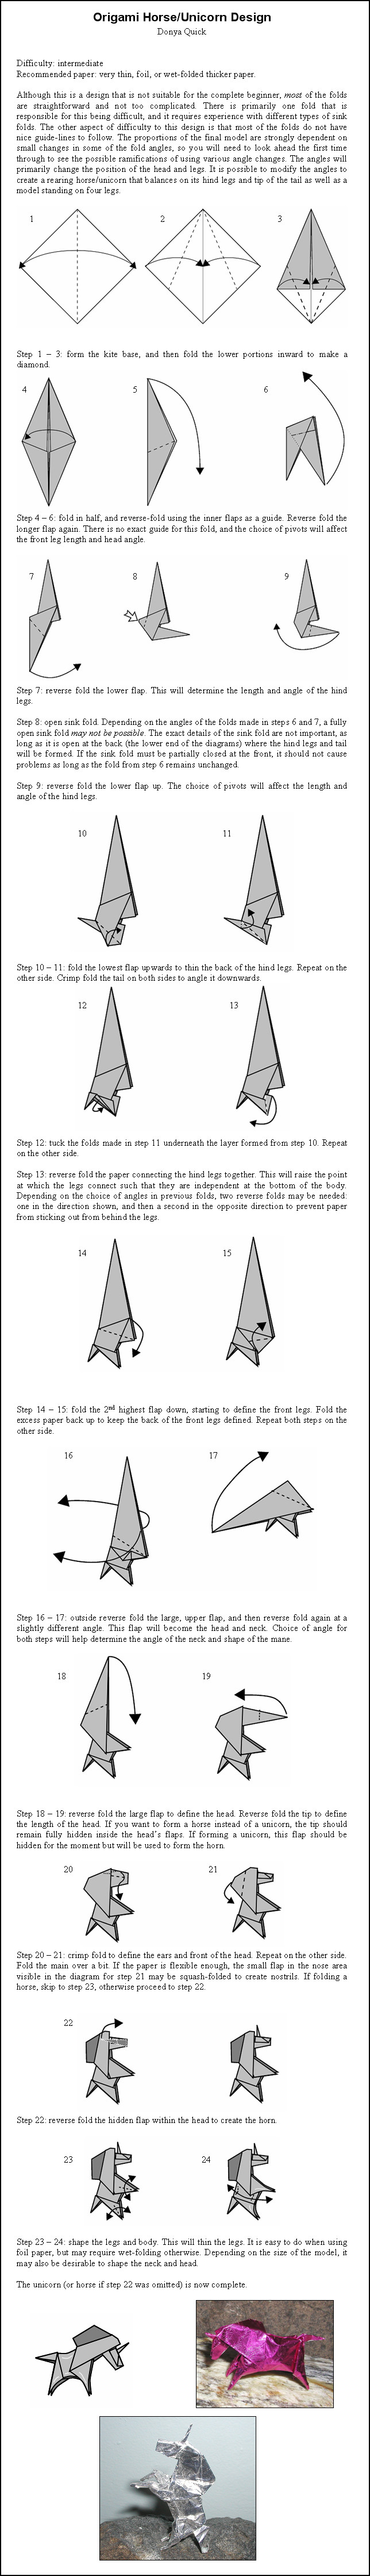 Origami Unicorn - Instructions